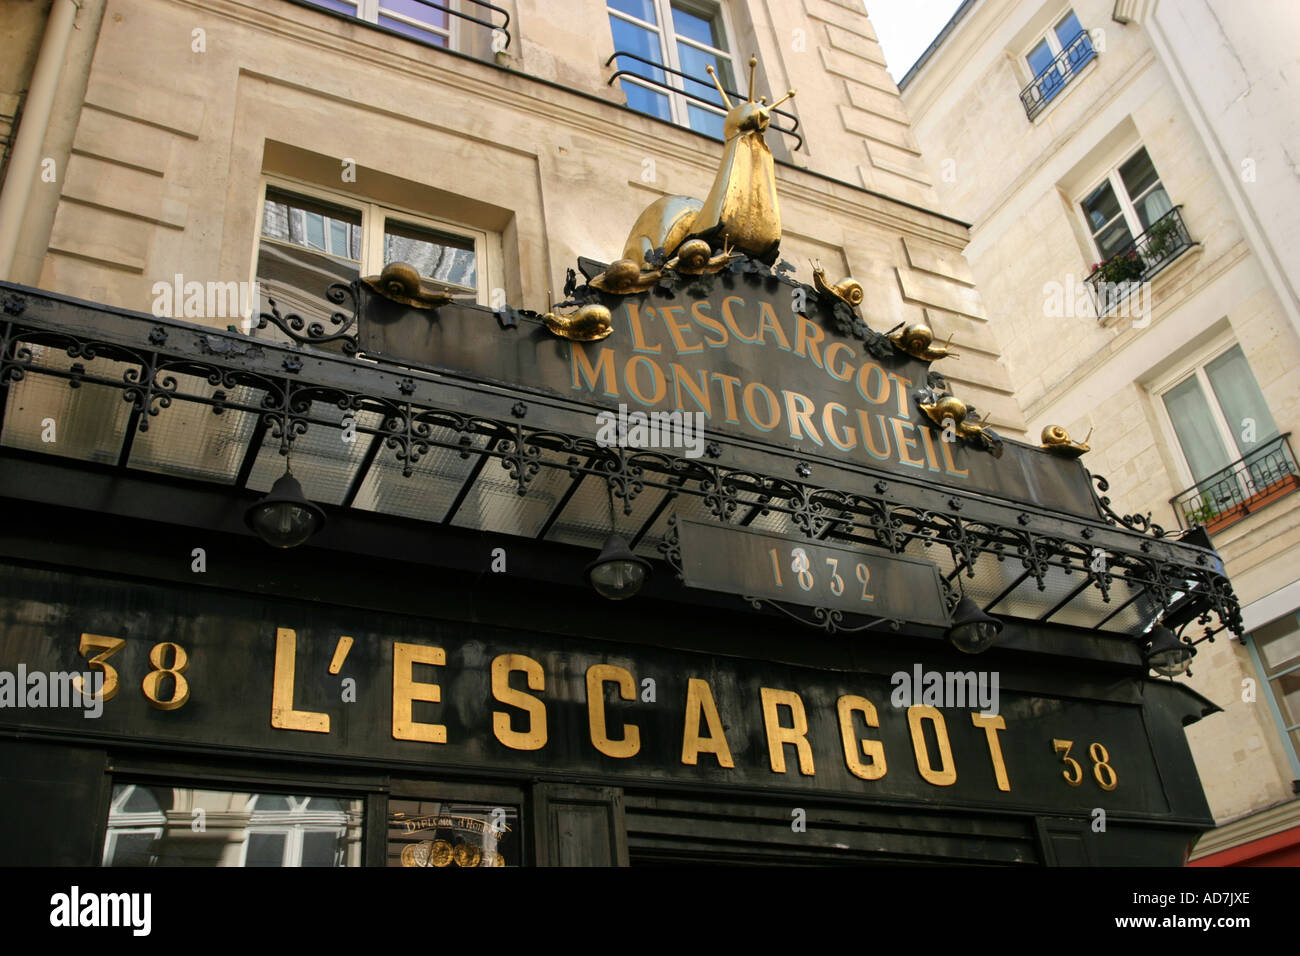 The famous L'Escargot Montorgueil Restaurant 38 rue Montorgueil Paris, France Stock Photo